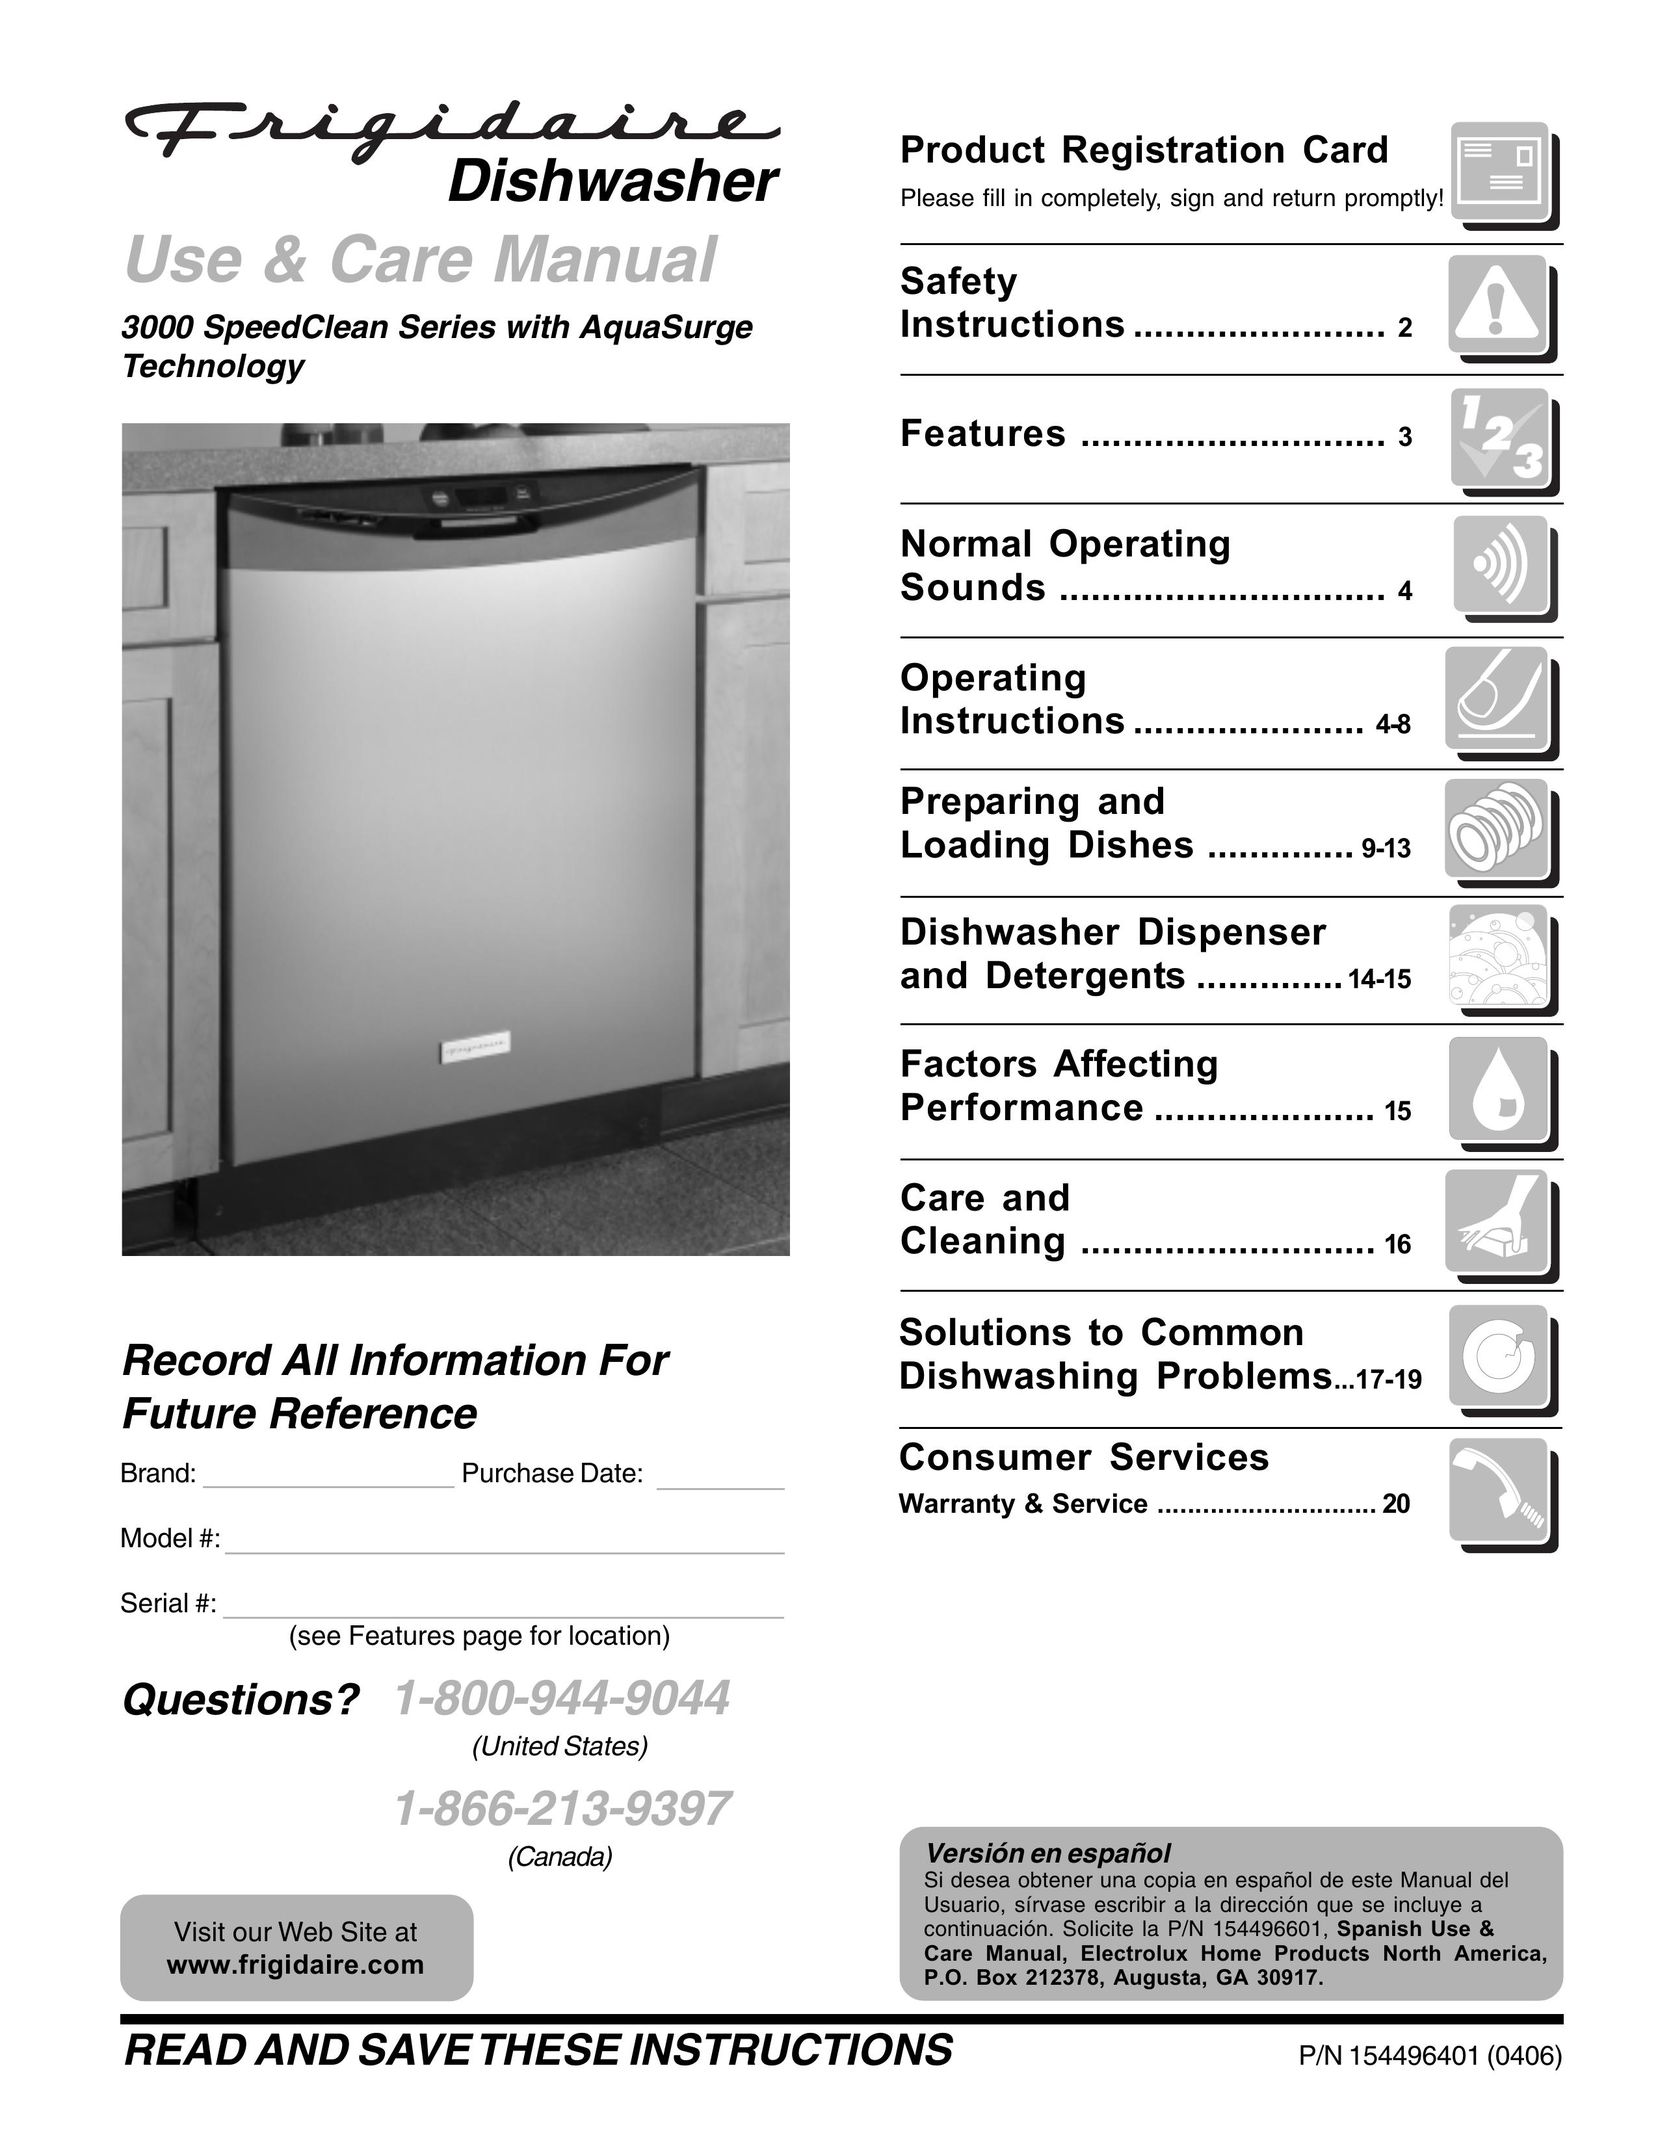 Frigidaire 3000 Dishwasher User Manual